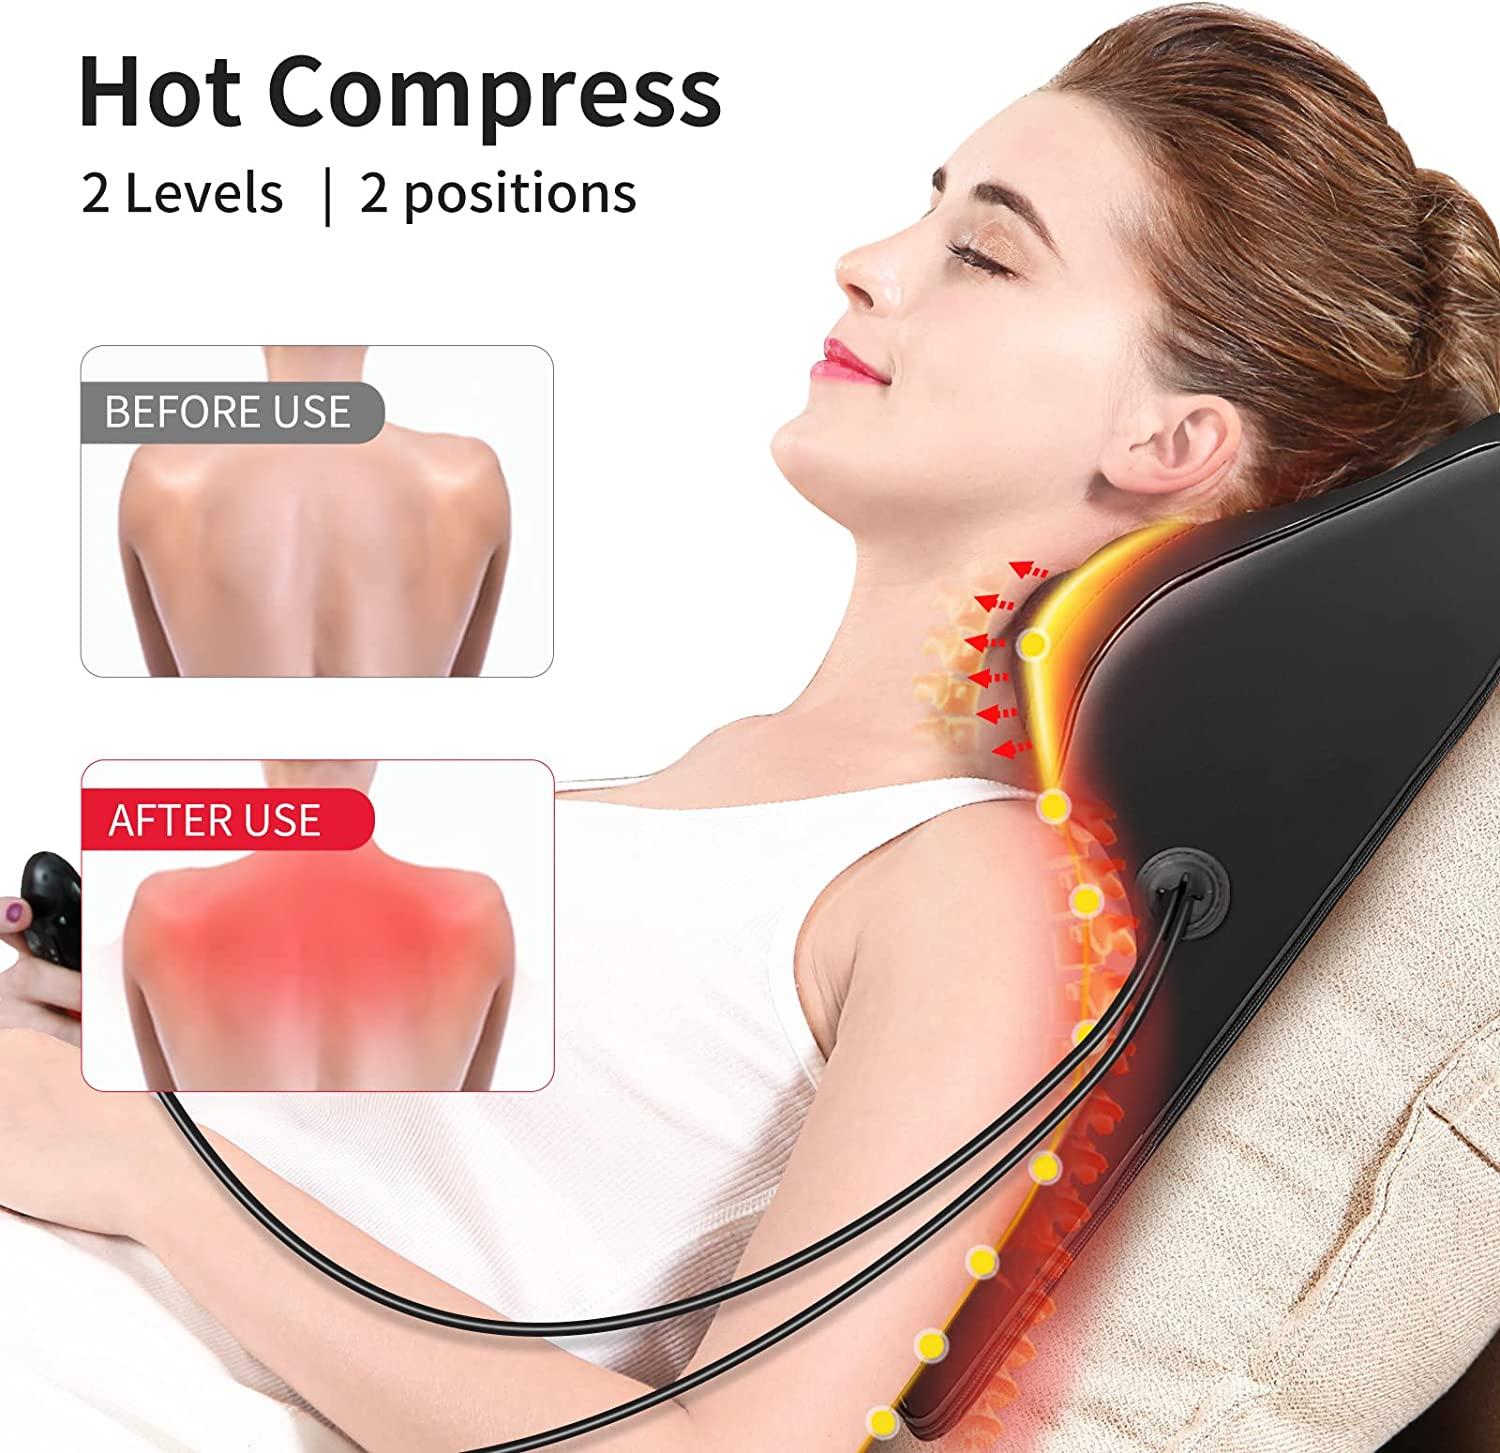 Vibrating Neck Massager For Neck And Cervical Spine Massage At Home